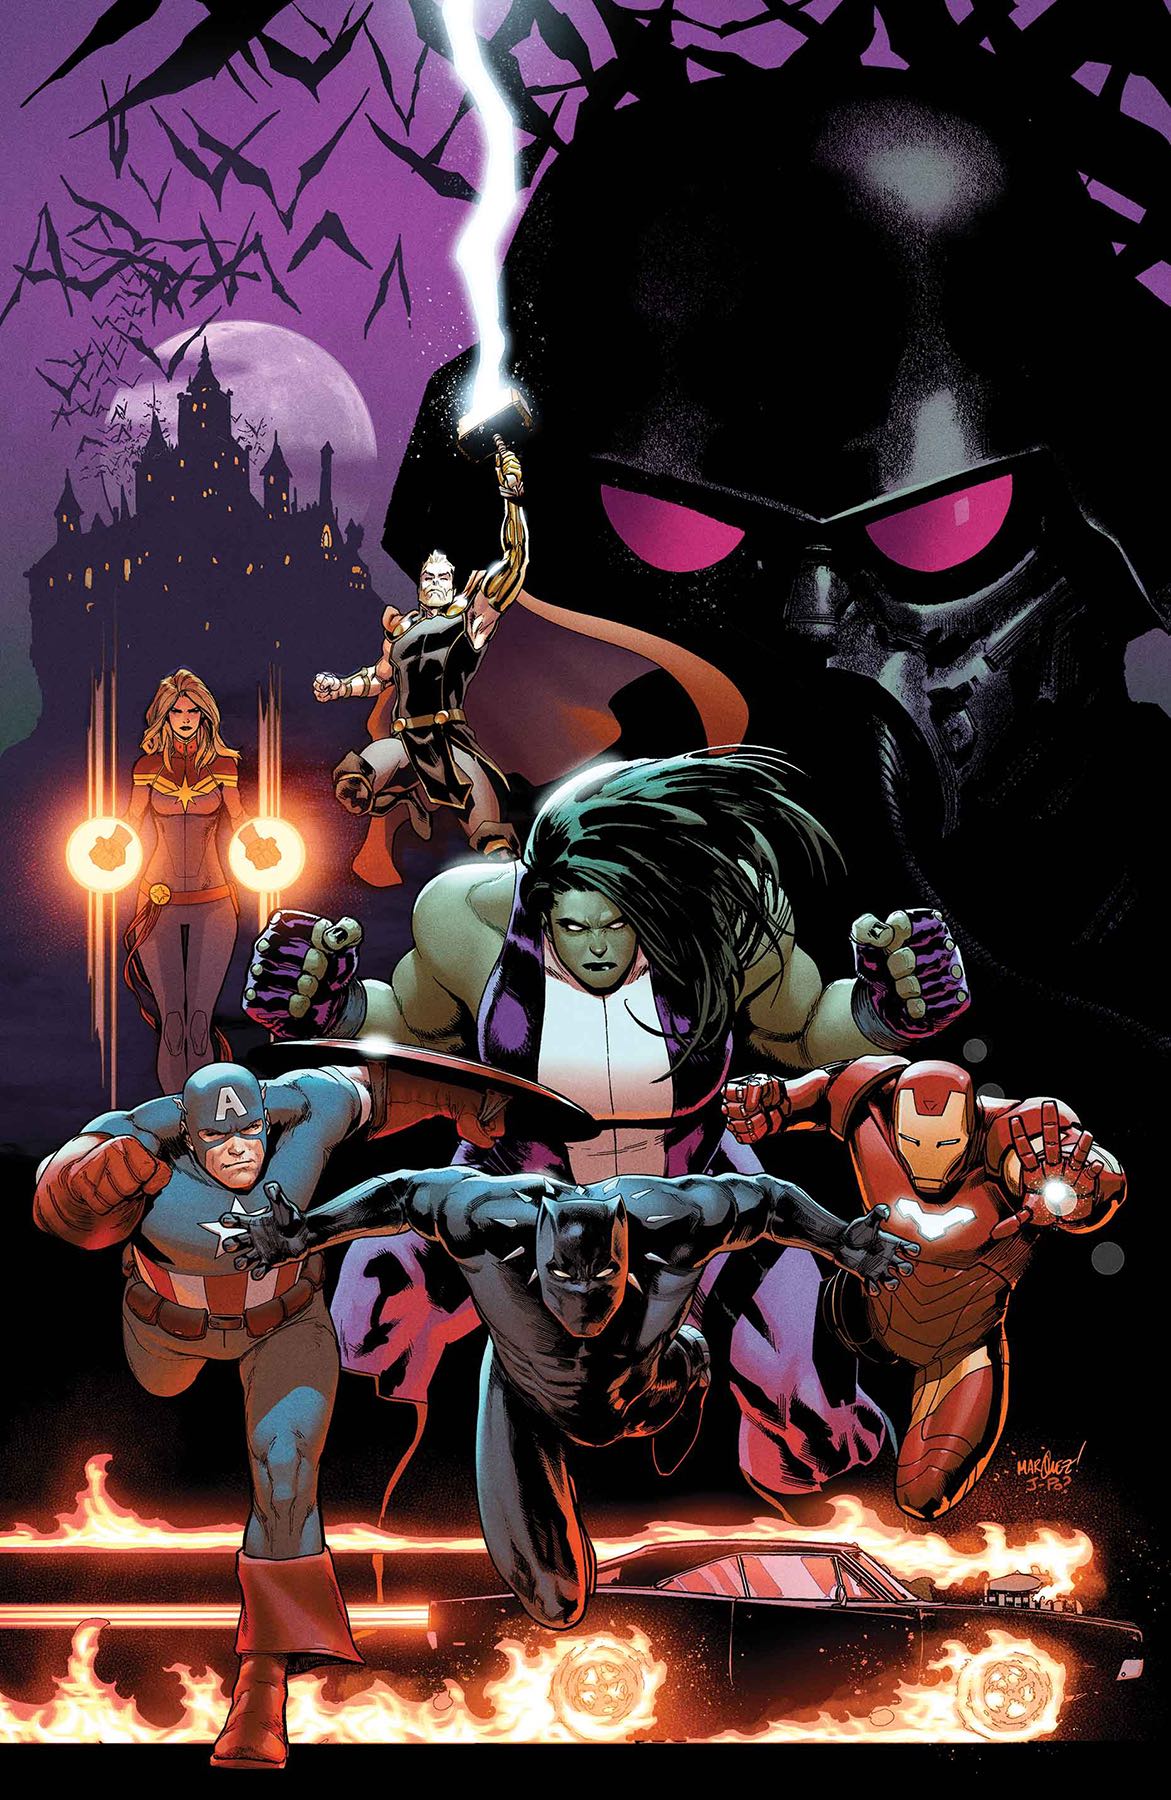 Marvel Preview: Avengers #14